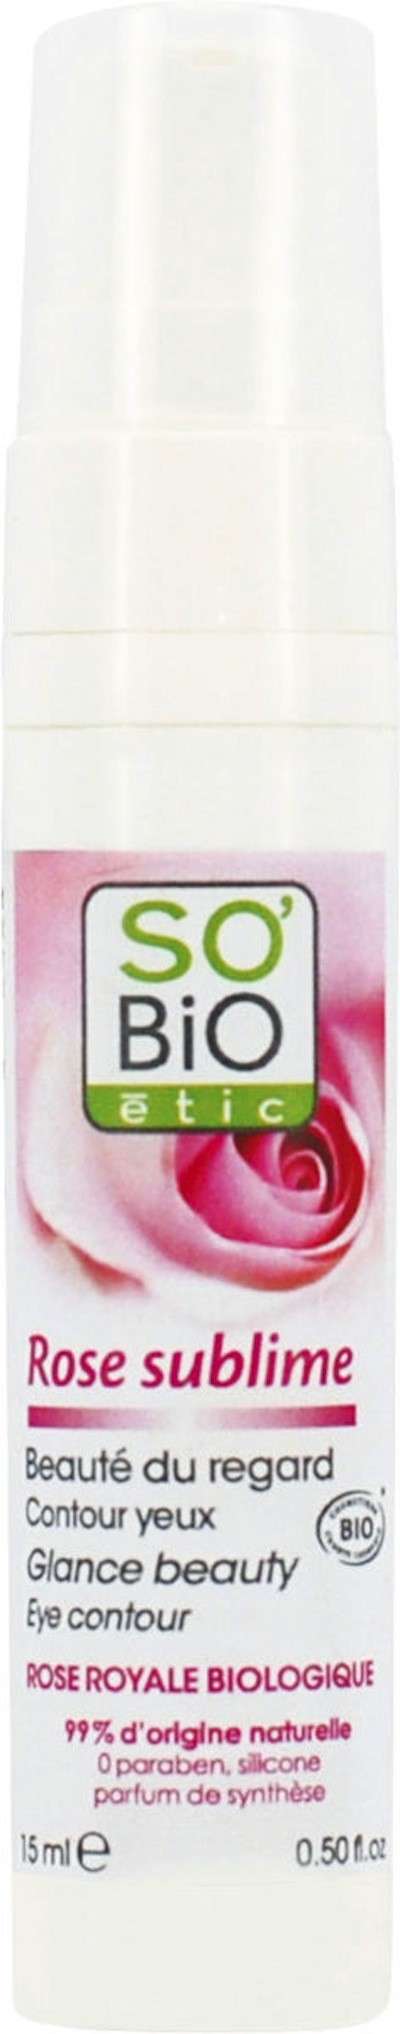 Gel contorno occhi alla rosa So' Bio Etic